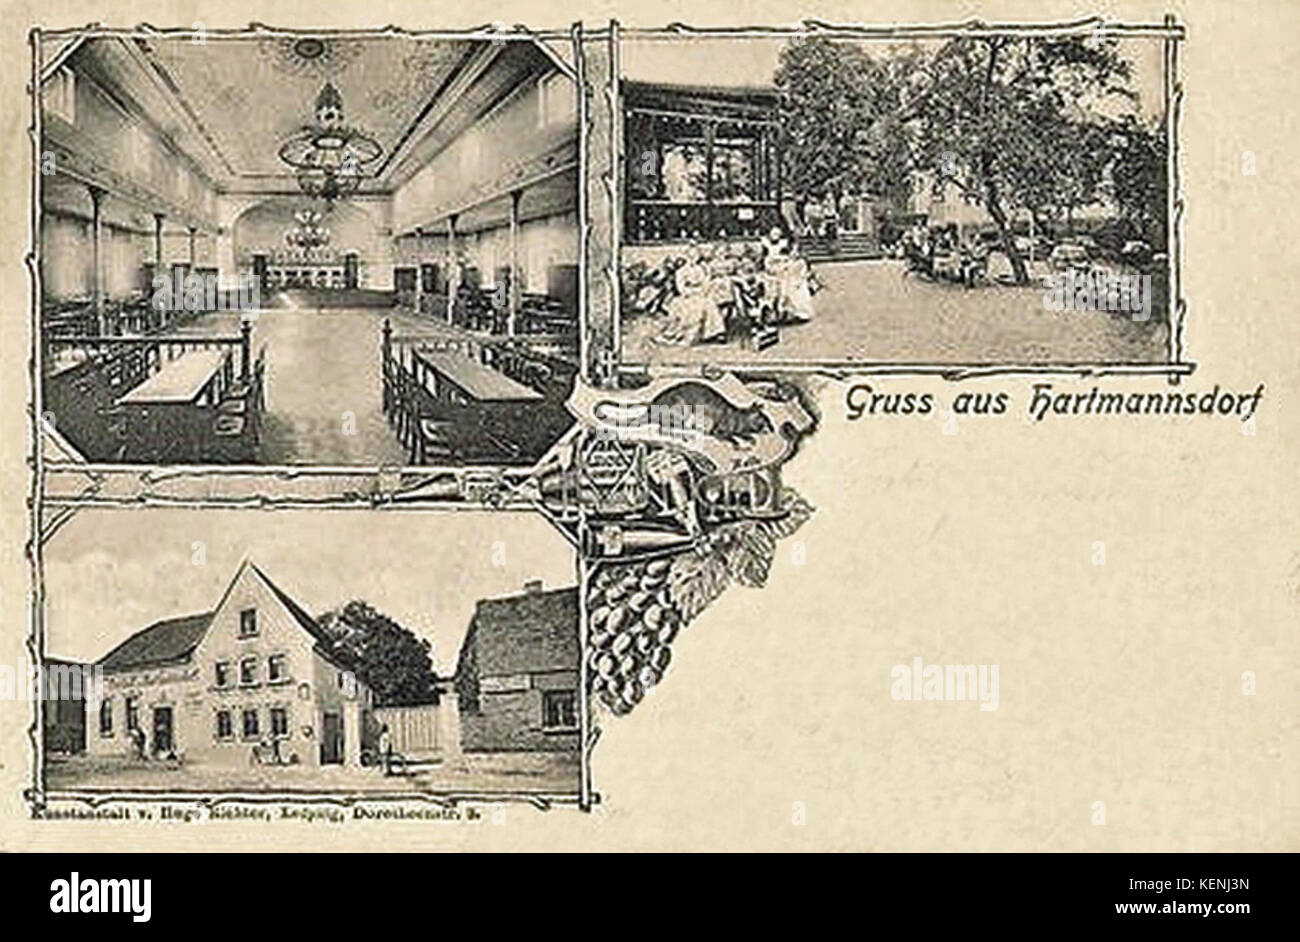 Lzg. Hartm.d. Zur Ratte 1906 Stock Photo